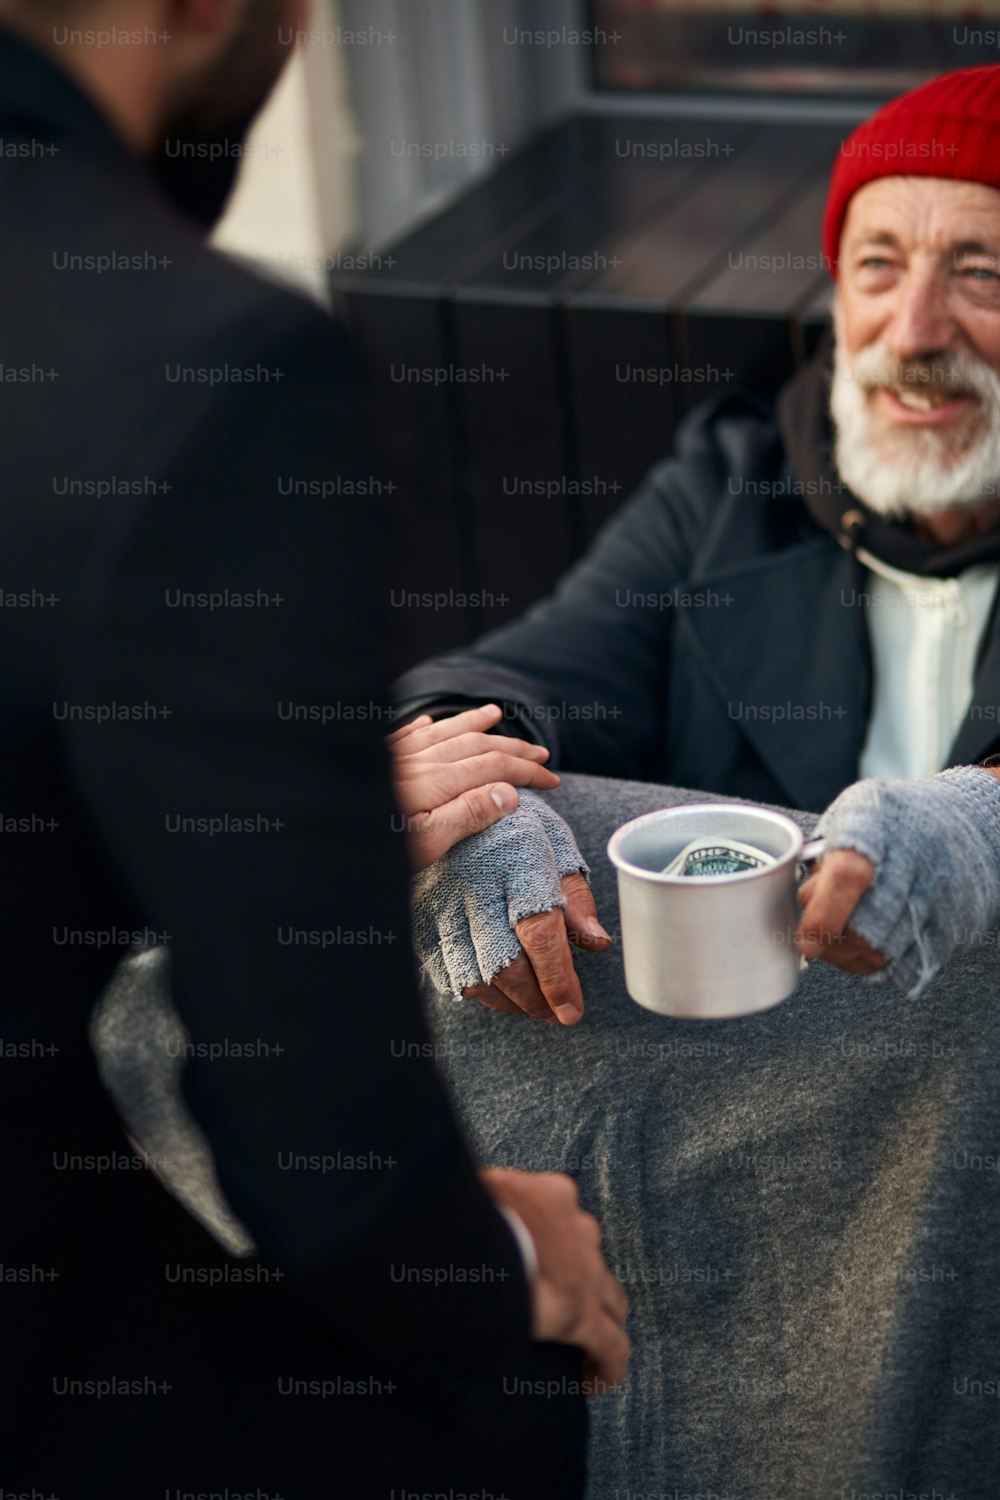 親切な男は、物乞いの通りに座っている物乞いの男性を助け、寒い天候。哀れな男性はお金、食べ物、避難所が必要です。灰色の手袋をはめた乞食